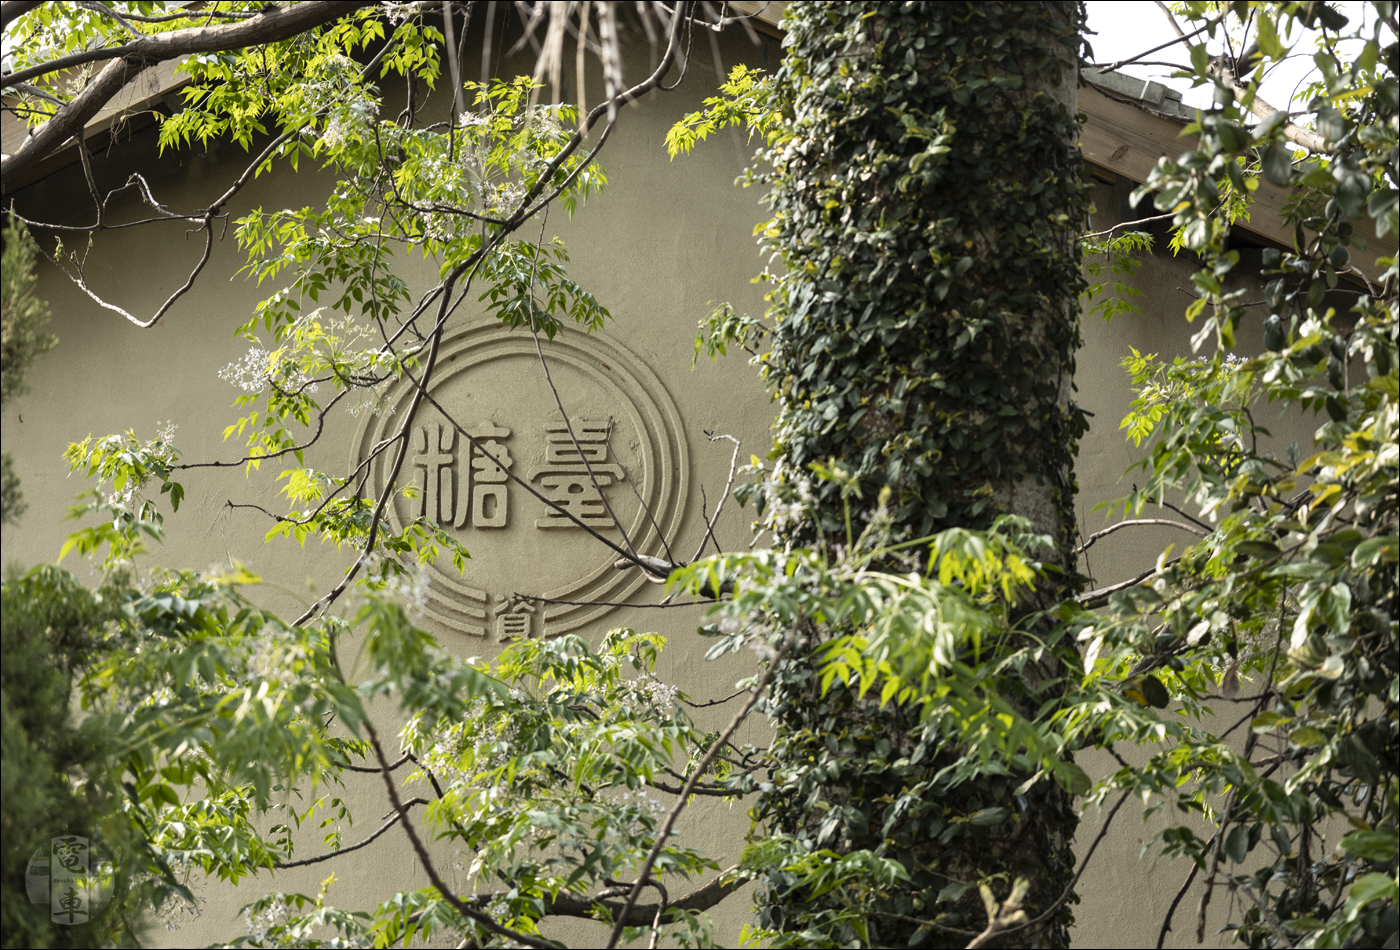 A Tajvani Cukorgyárak emblémája a Yuemei Cukorgyár egyik épületének oldalán.